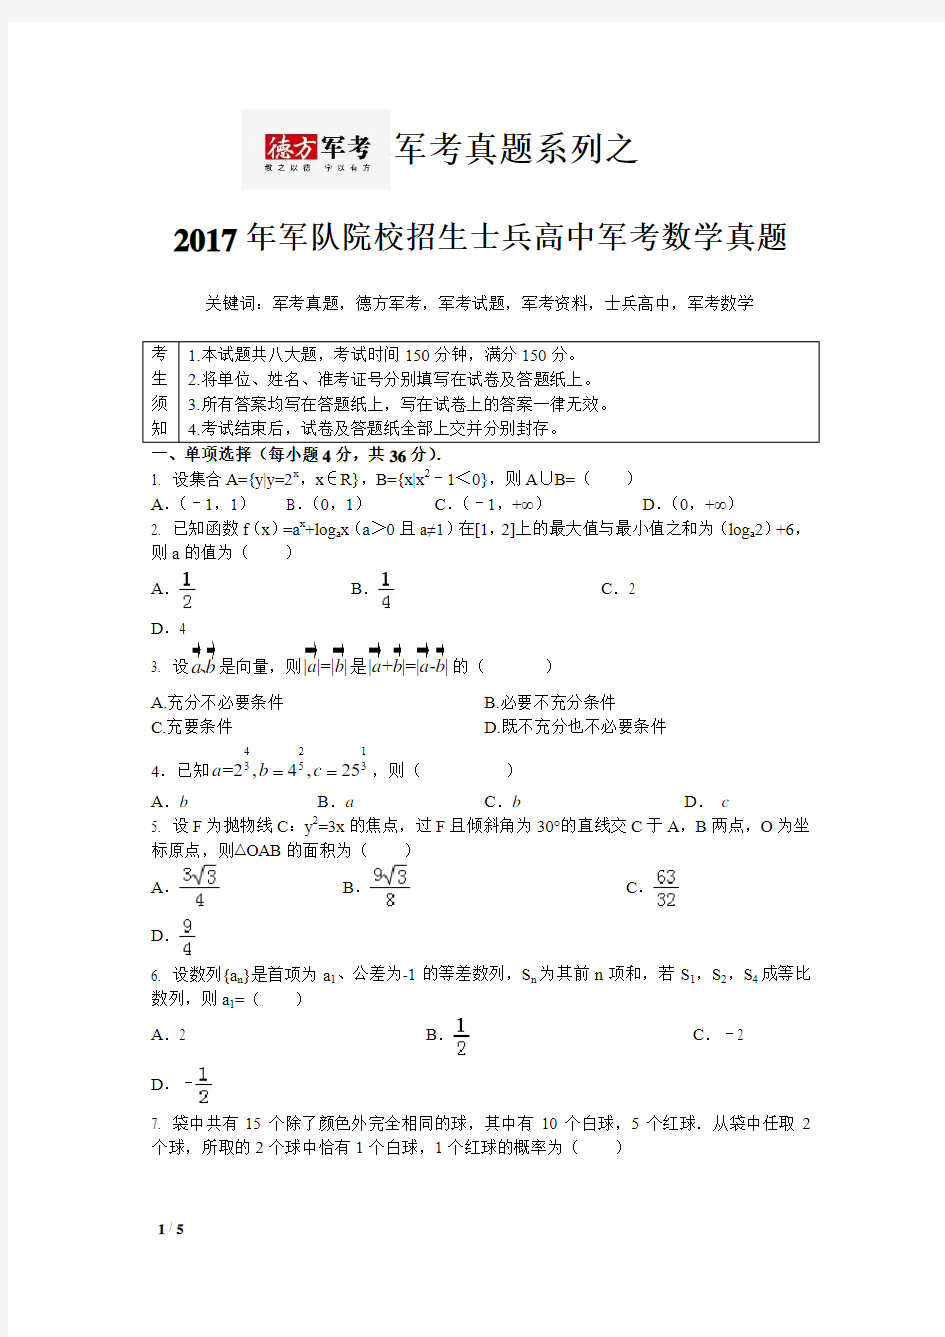 2017年军考数学真题《历年军考真题系列》